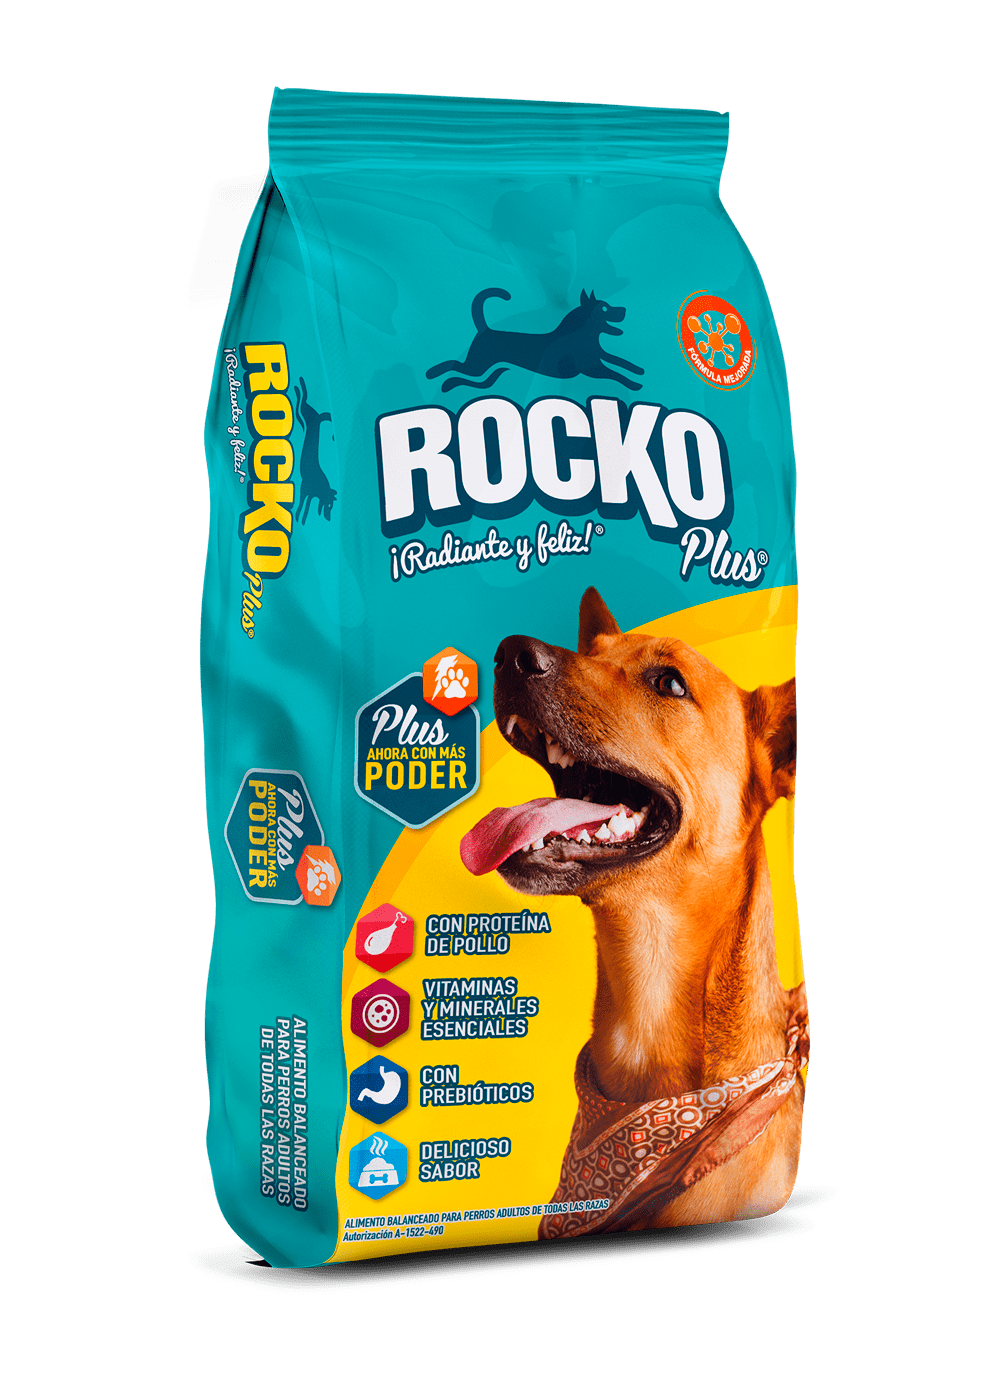 Producto Rocko Plus® complete perro